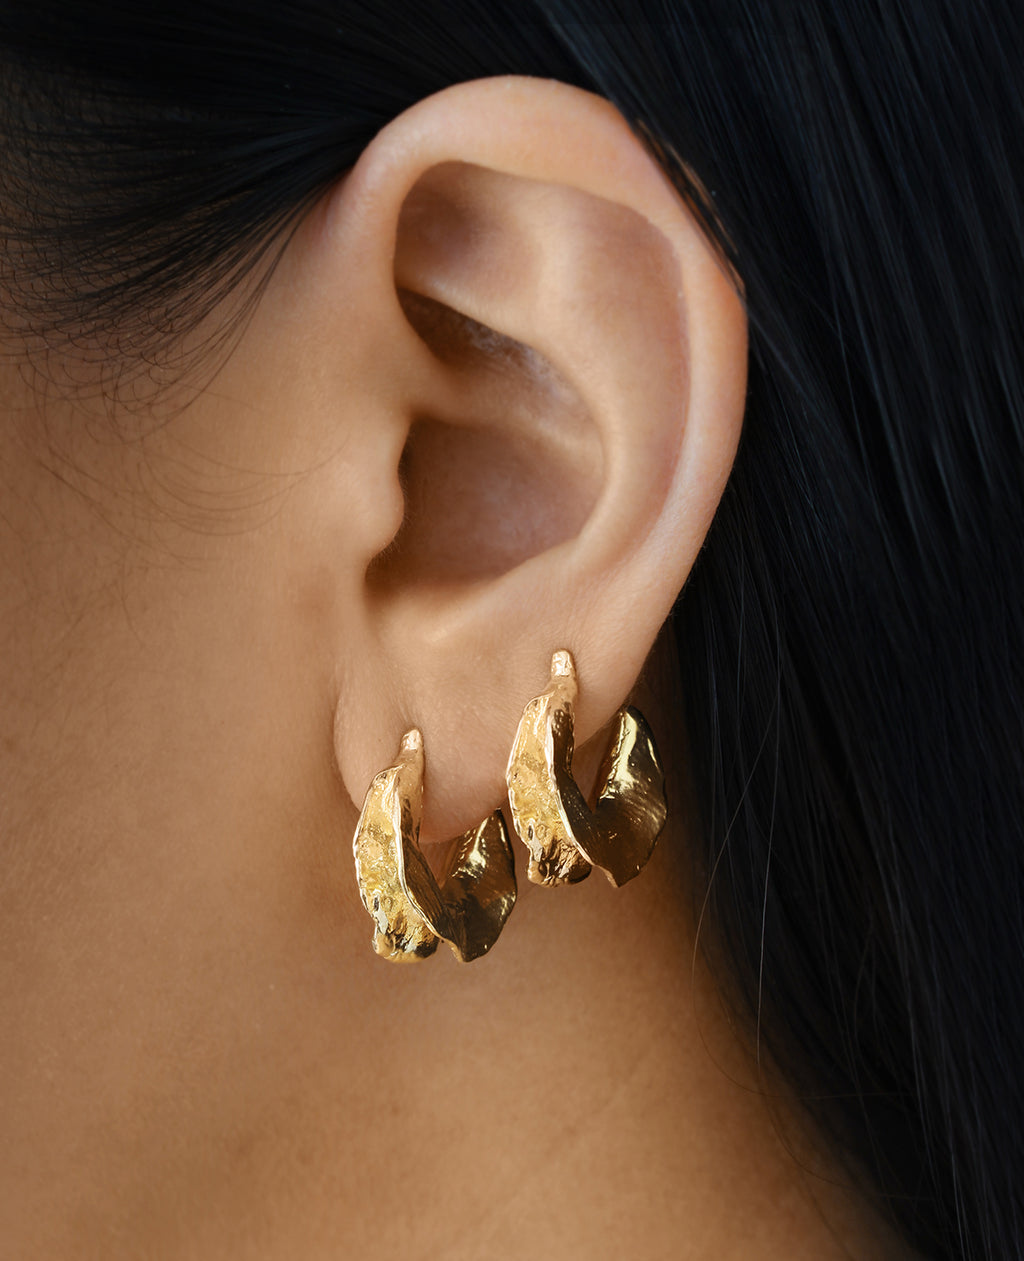 LIBRA MOON // anneaux dorés - ORA-C jewelry - bijoux faits à la main par Caroline Pham, designer indépendante basée à Montréal.